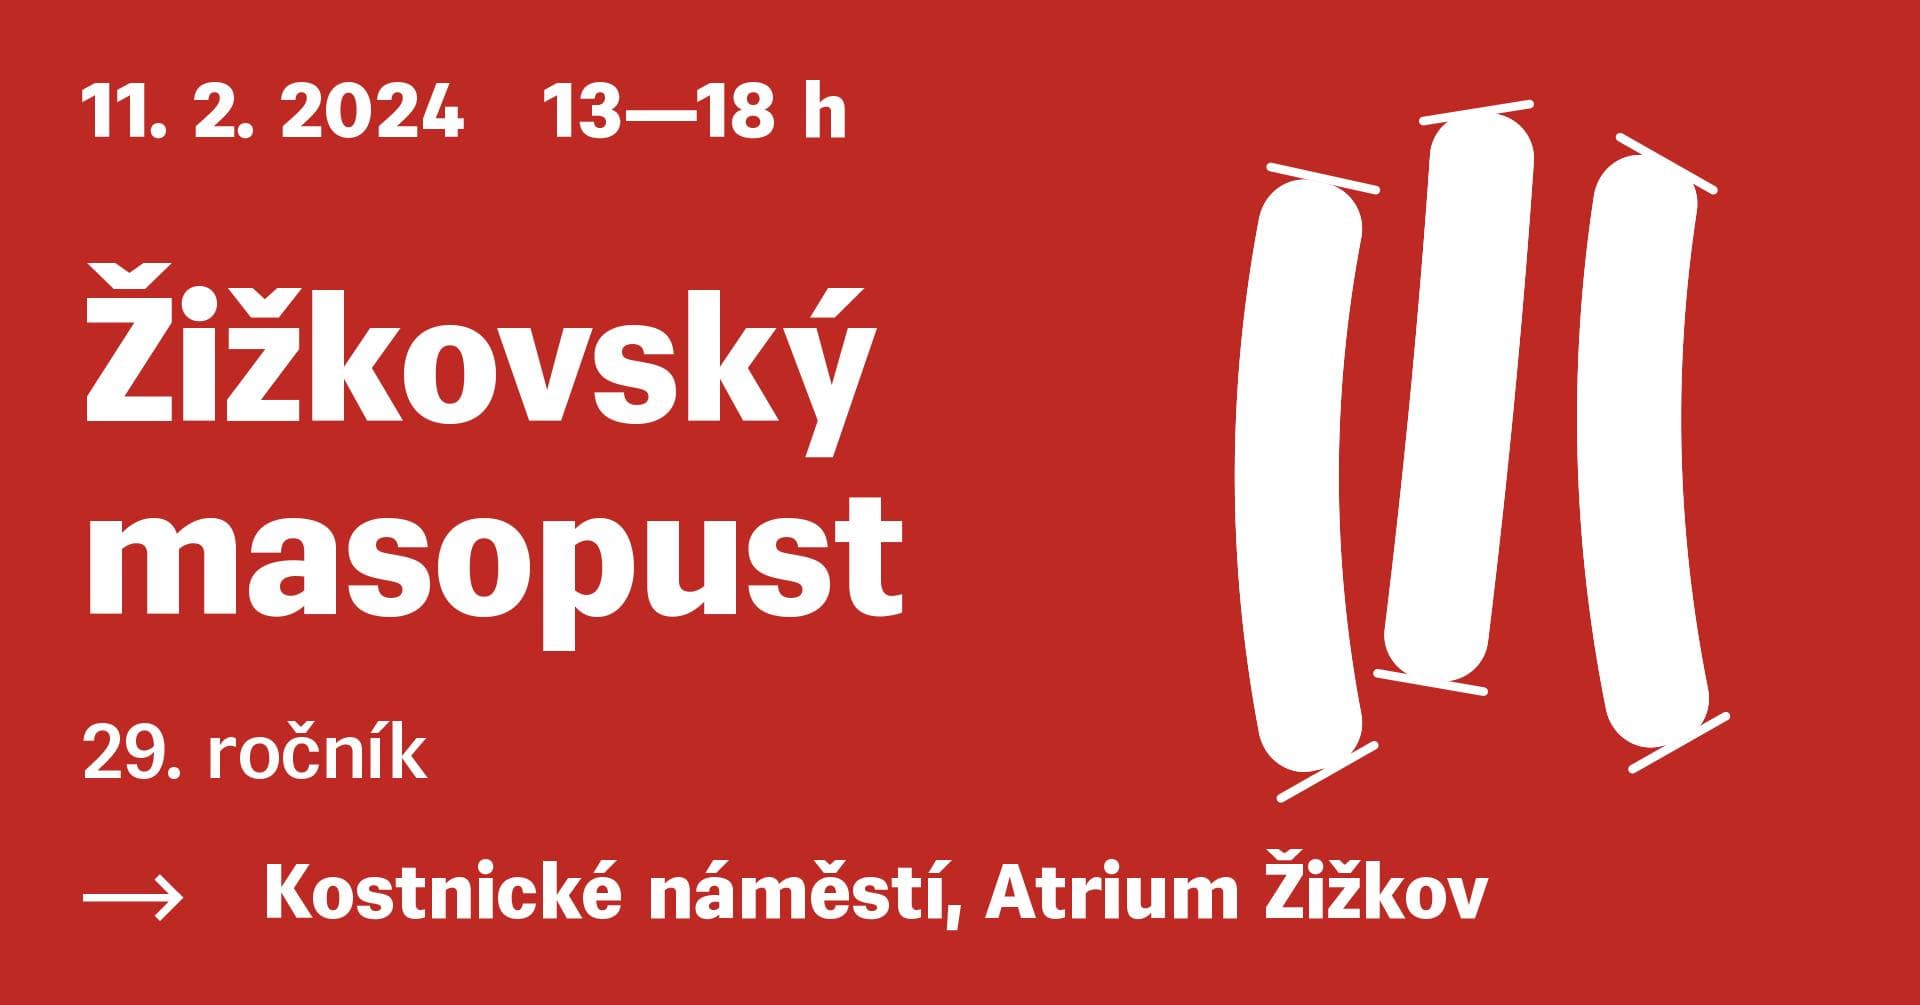 11 февраля в Праге пройдет Жижковский мясопуст